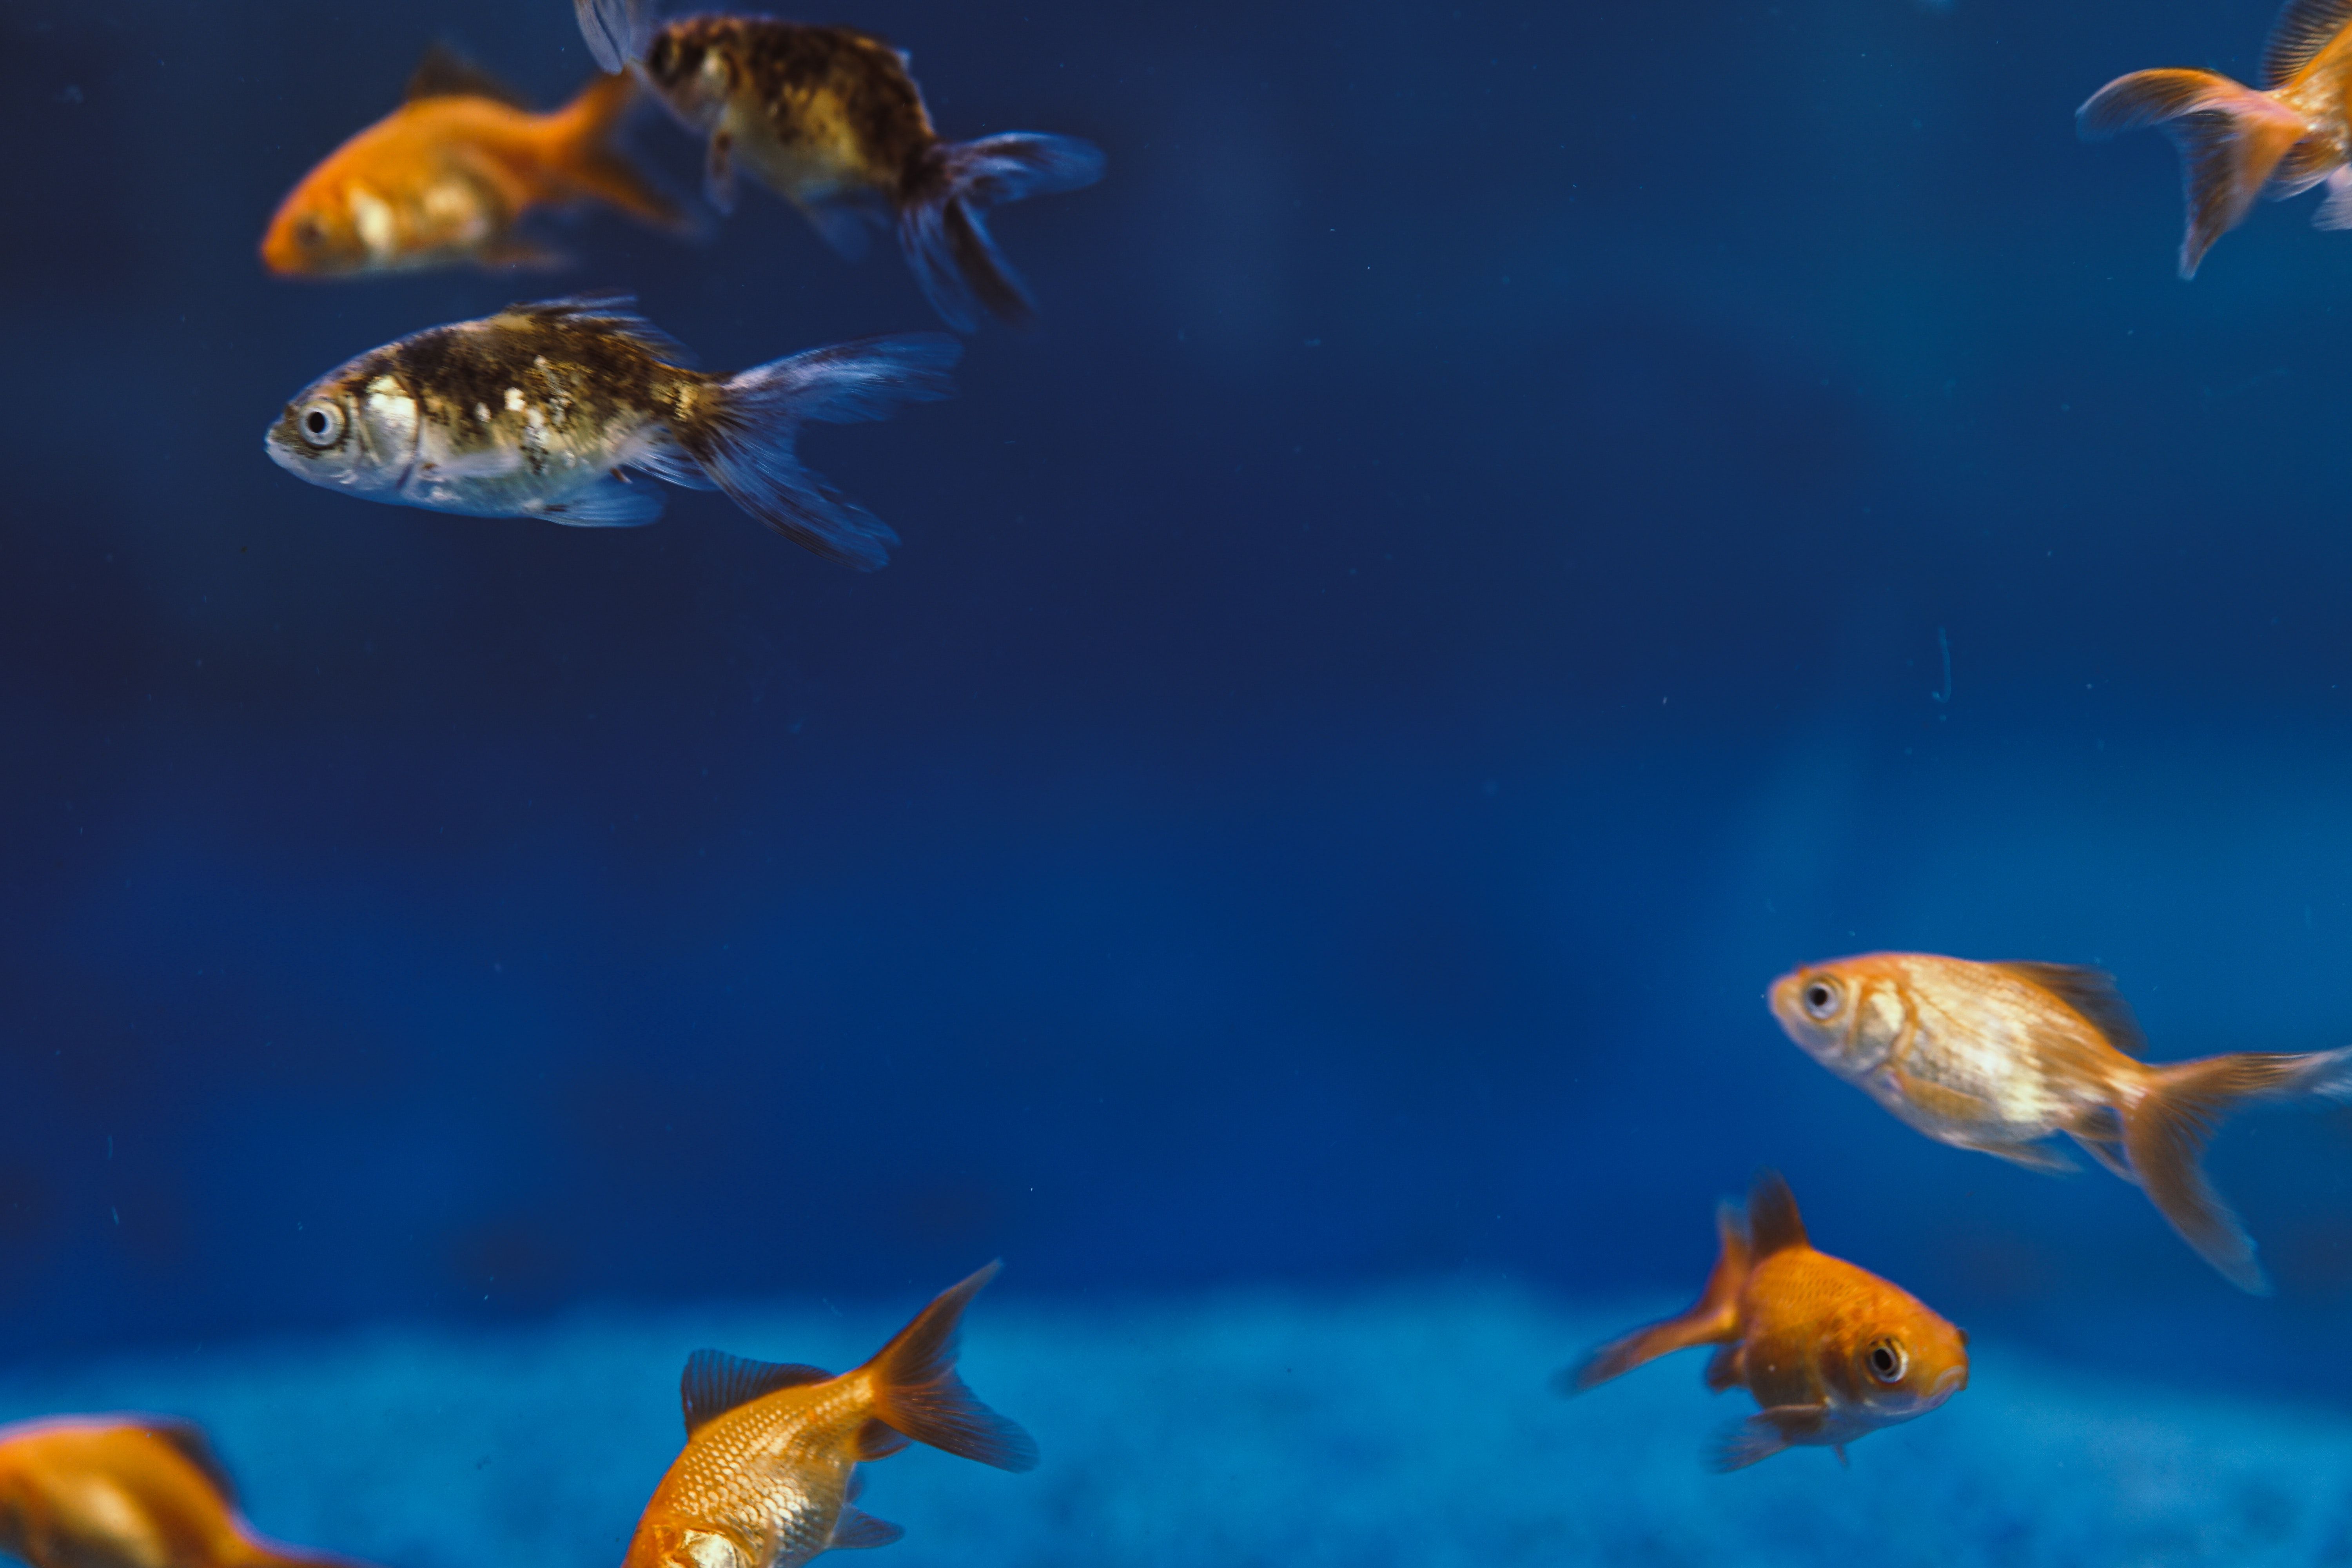  Aquarien Hintergrundbild 6000x4000. Kostenloses Foto zum Thema: aquarium, baden, blau, fische, fischglas, flosse, goldfisch, nahansicht, orange, tierfotografie, unter wasser fischen, unterwasser, wasser, wassertiere